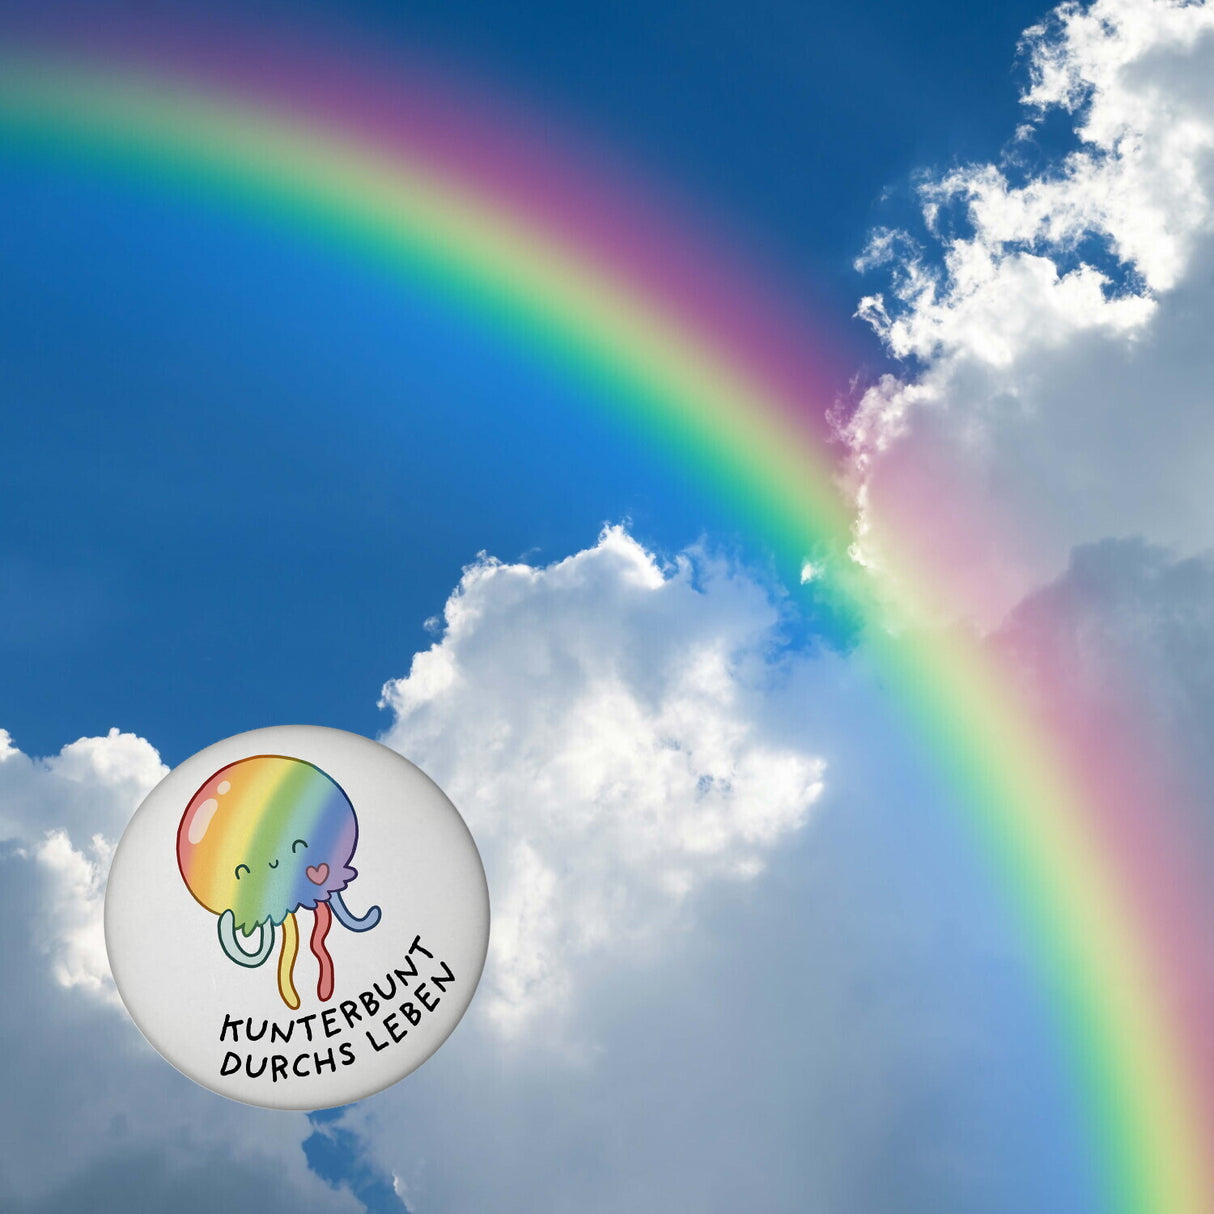 Jelly & Friends Regenbogen-Qualle Magnet rund mit Spruch Kunterbunt durchs Leben